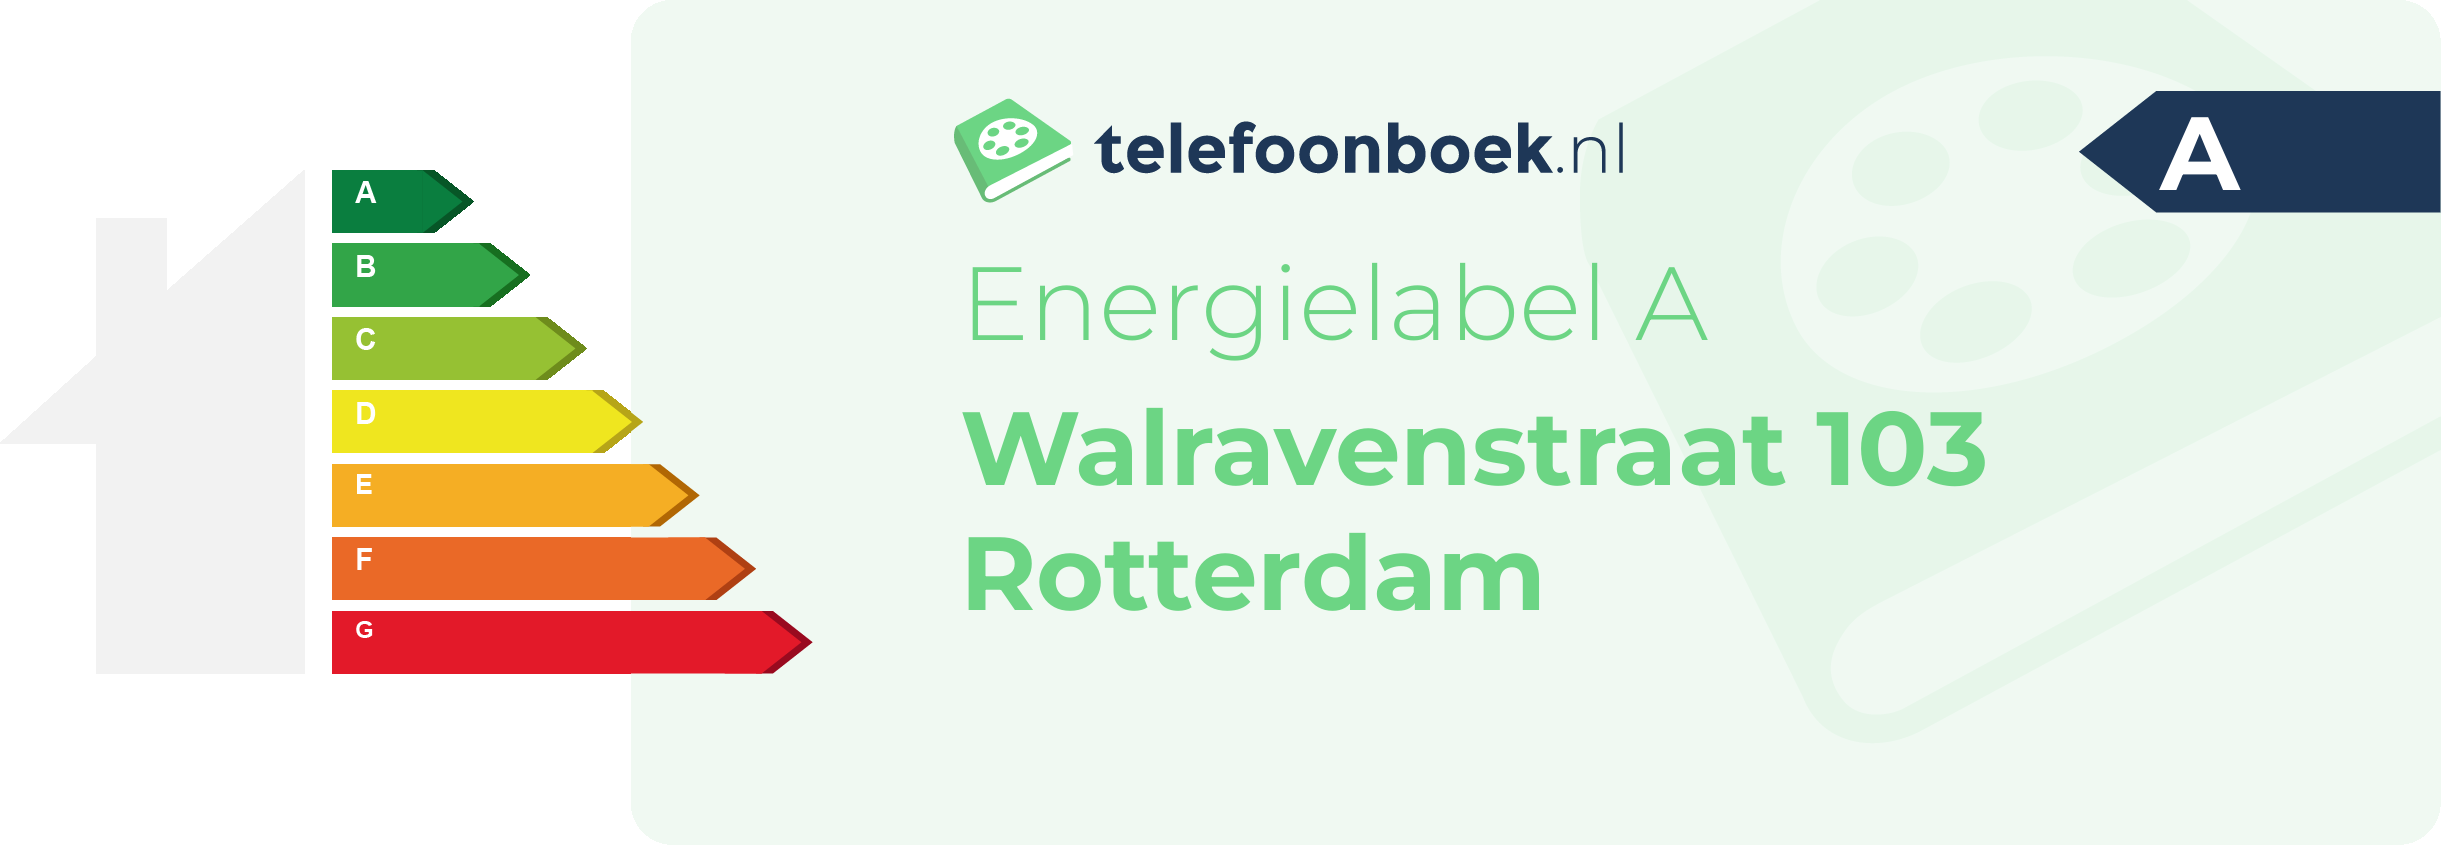 Energielabel Walravenstraat 103 Rotterdam